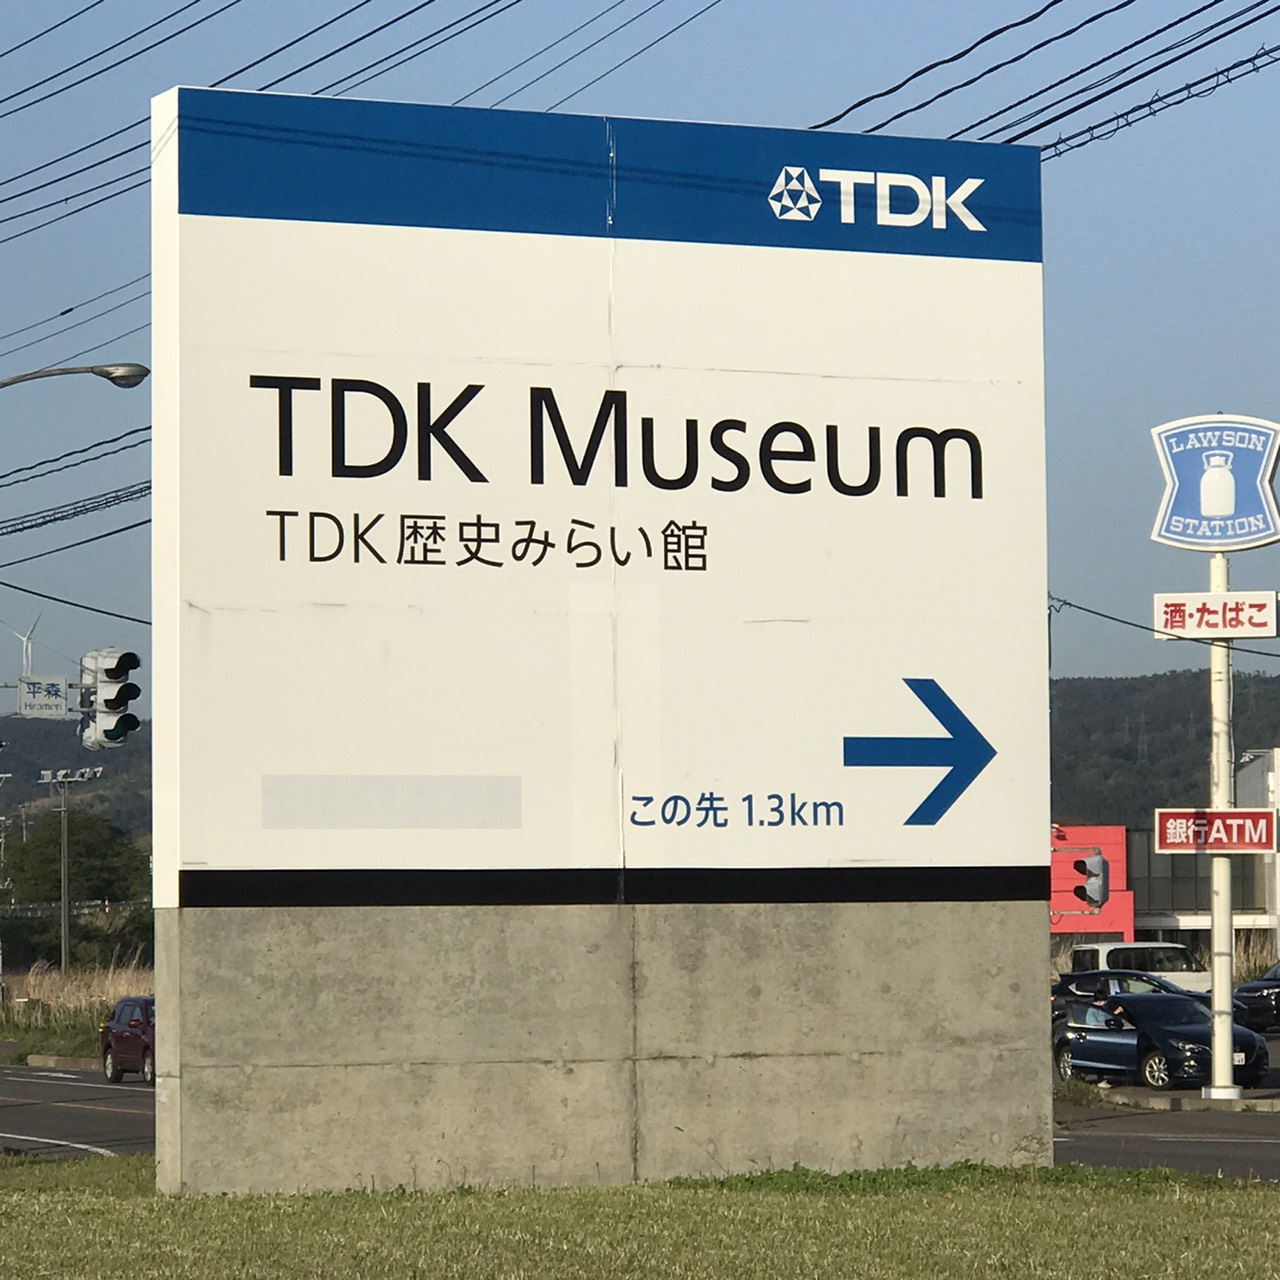 サムネイル:TDK歴史みらい館 様 ＆ にかほ市フェライトこども科学館 様 の看板